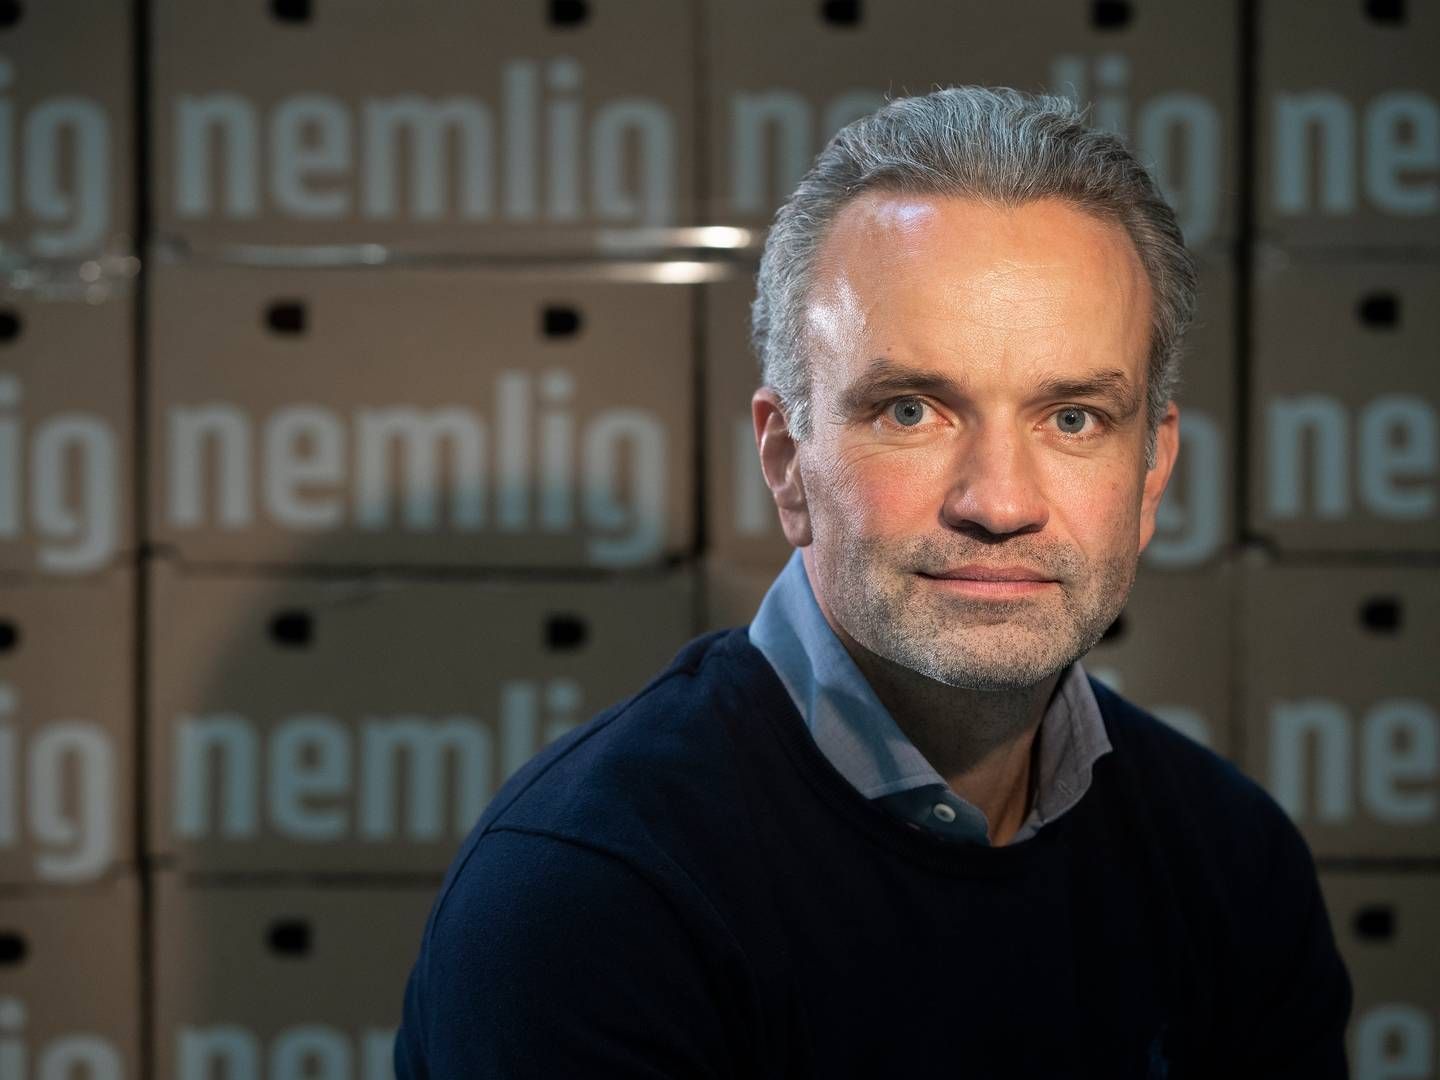 Adm. direktør Stefan Plenge stiftede Nemlig.com i 2010 og ejer i dag 27,33 pct. af onlinesupermarkedet. | Foto: Søren Bidstrup